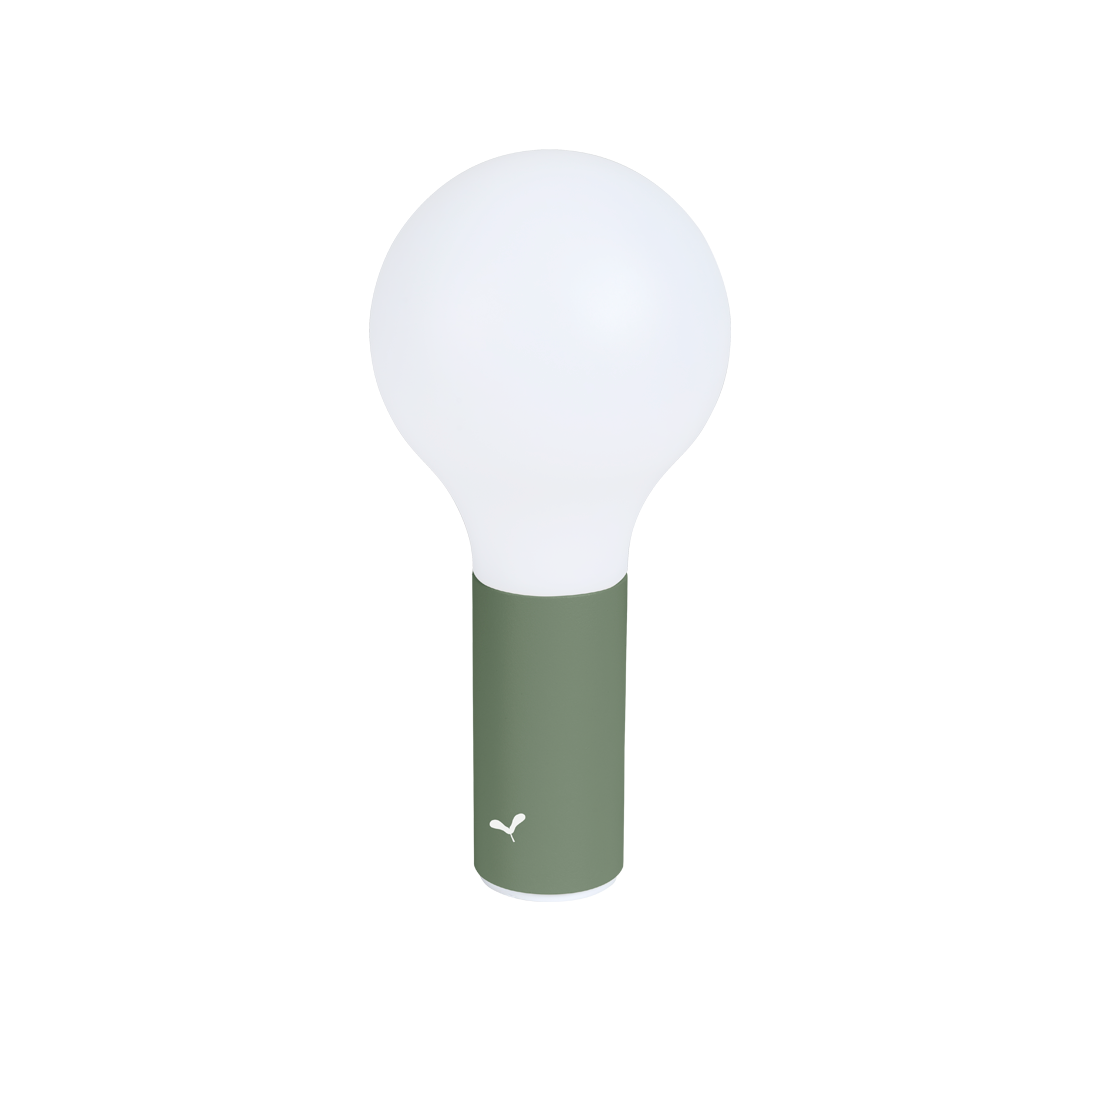 Aplô H.24 lamp – Designer Outdoor Lamp – Fermob